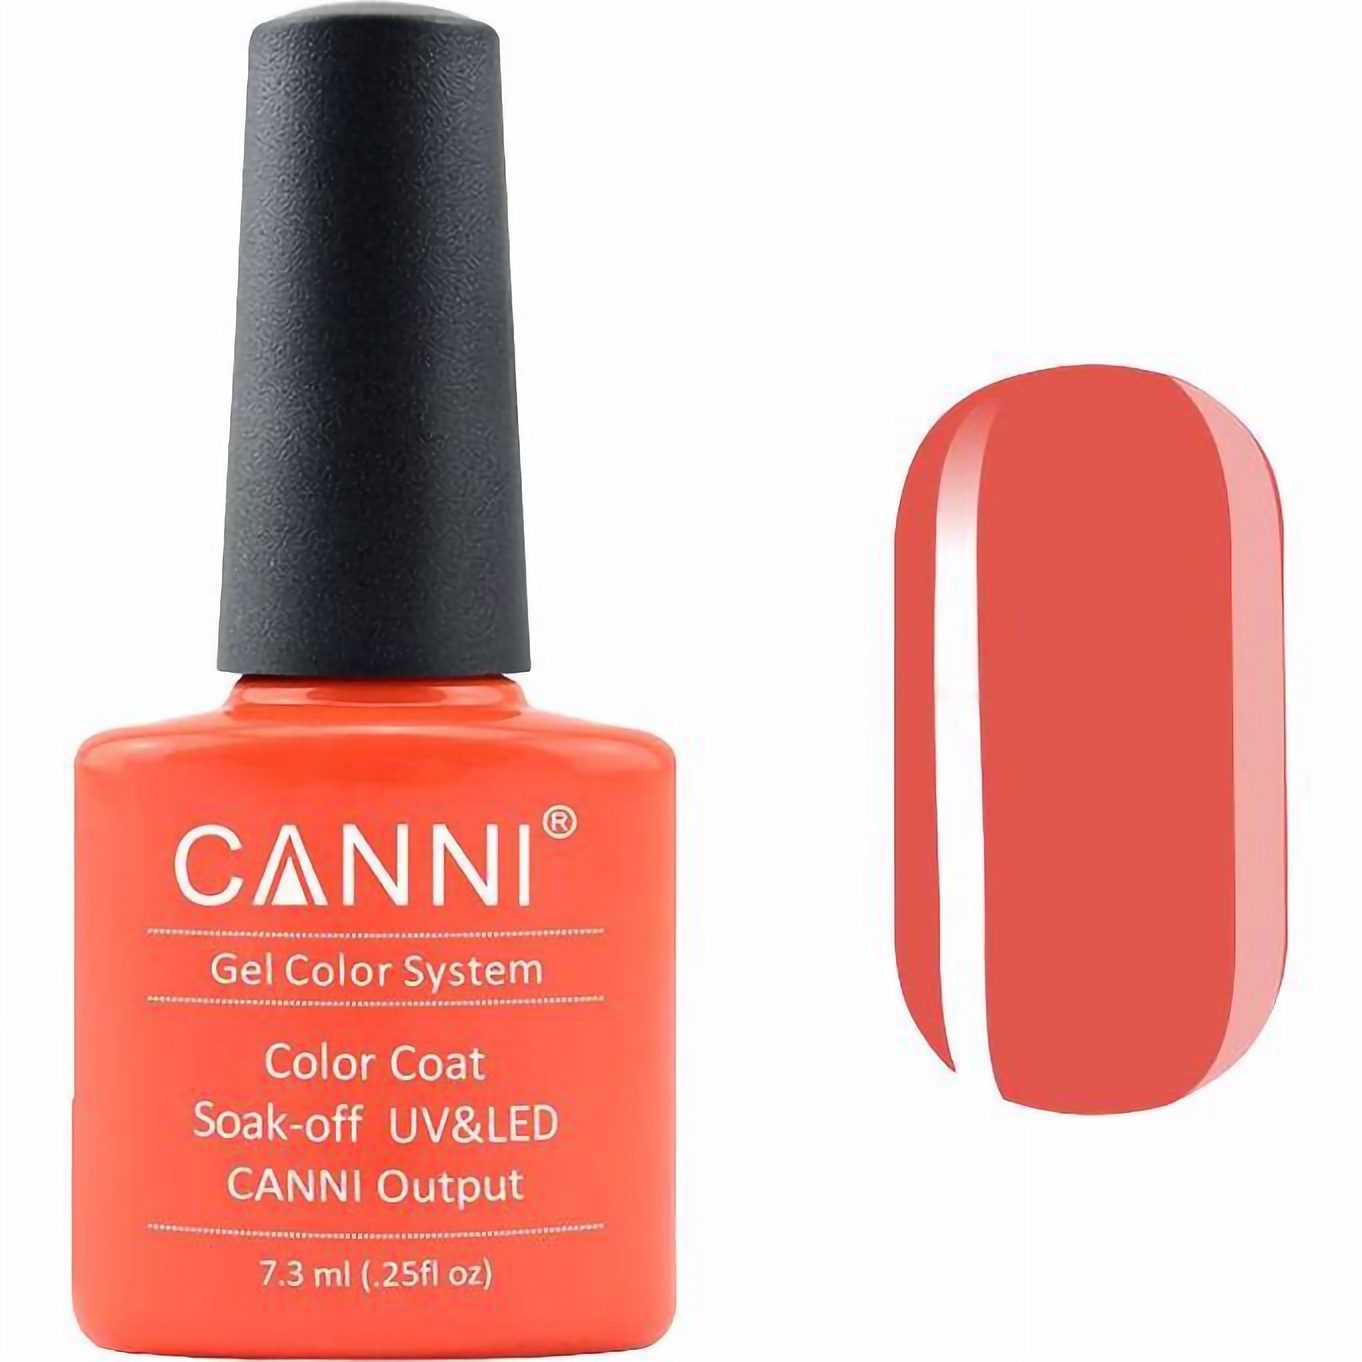 Гель-лак Canni Color Coat Soak-off UV&LED 168 розово-оранжевый 7.3 мл - фото 1